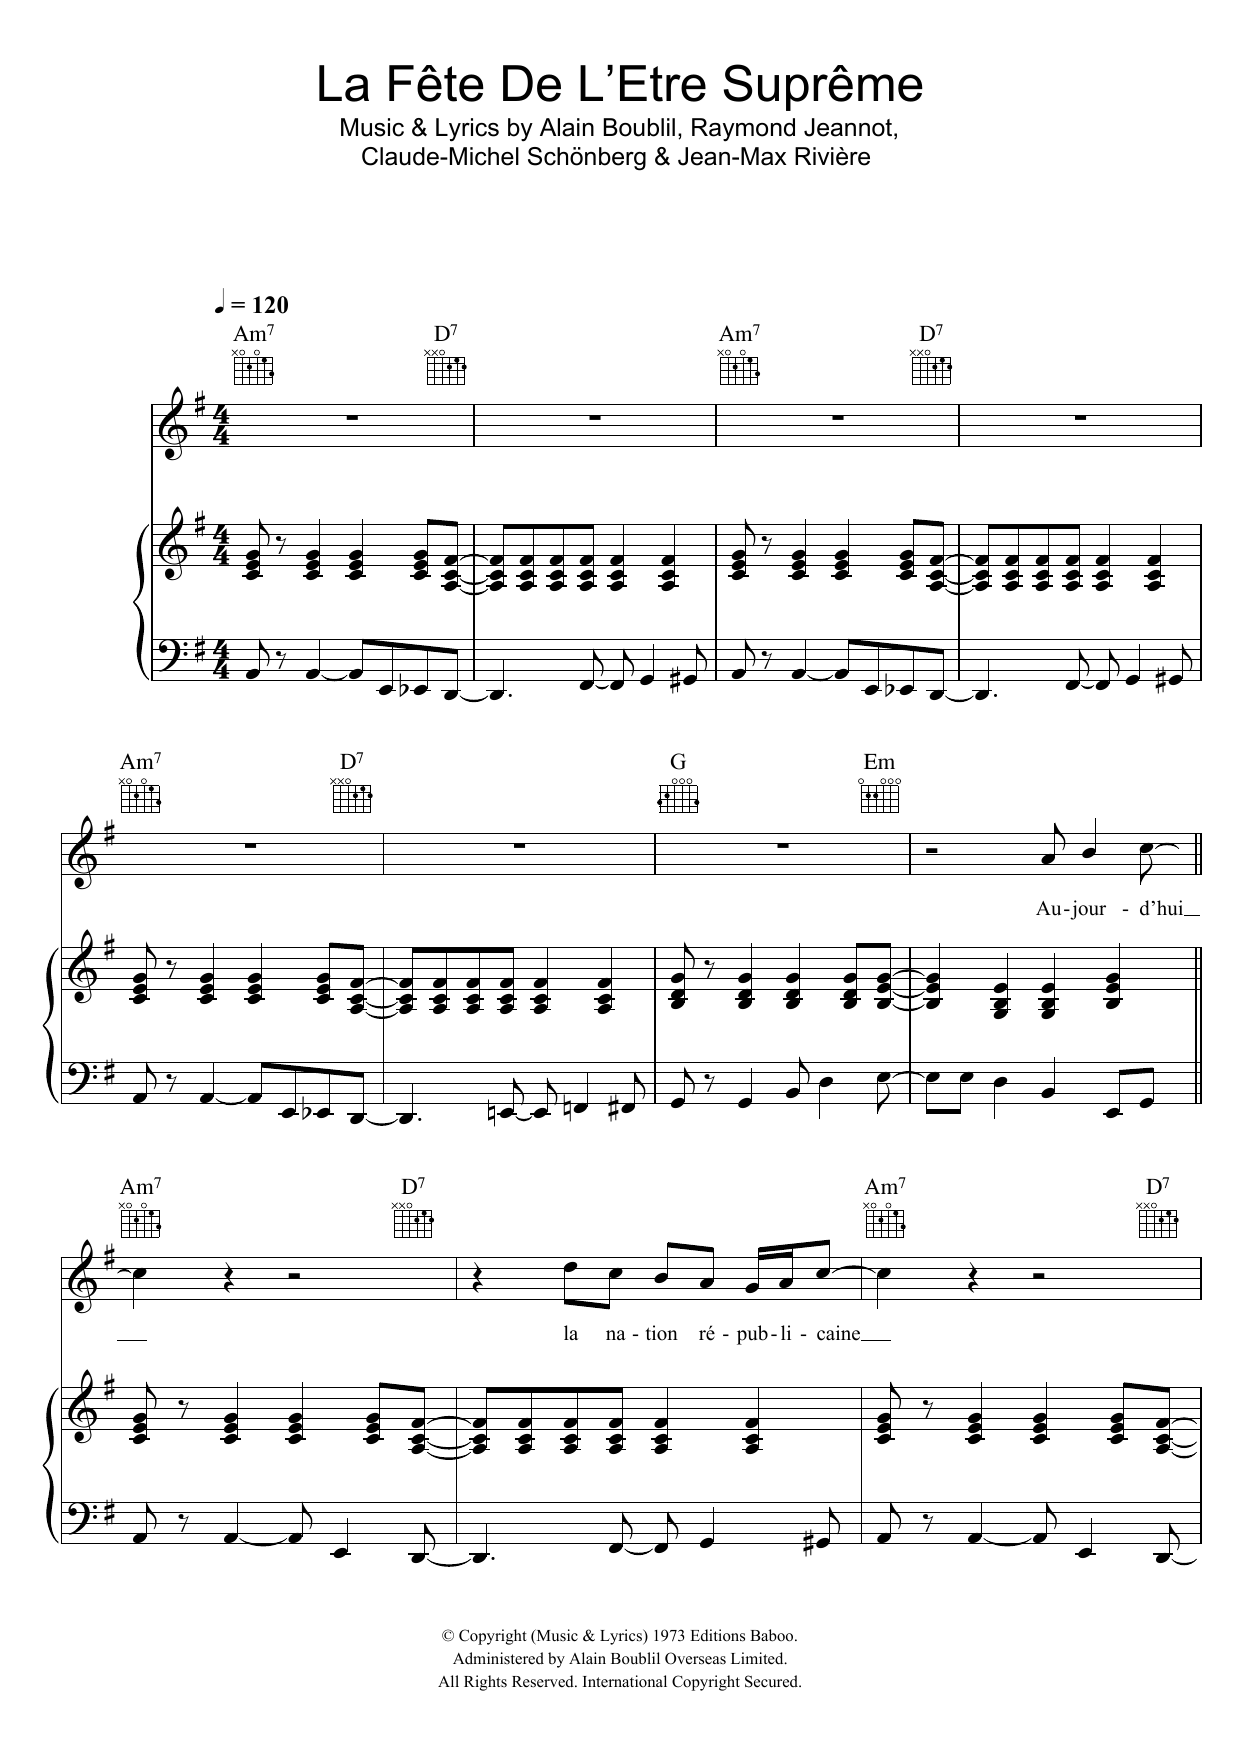 Claude-Michel Schonberg La Fete De L'Etre Supreme Sheet Music Notes & Chords for Piano, Vocal & Guitar - Download or Print PDF